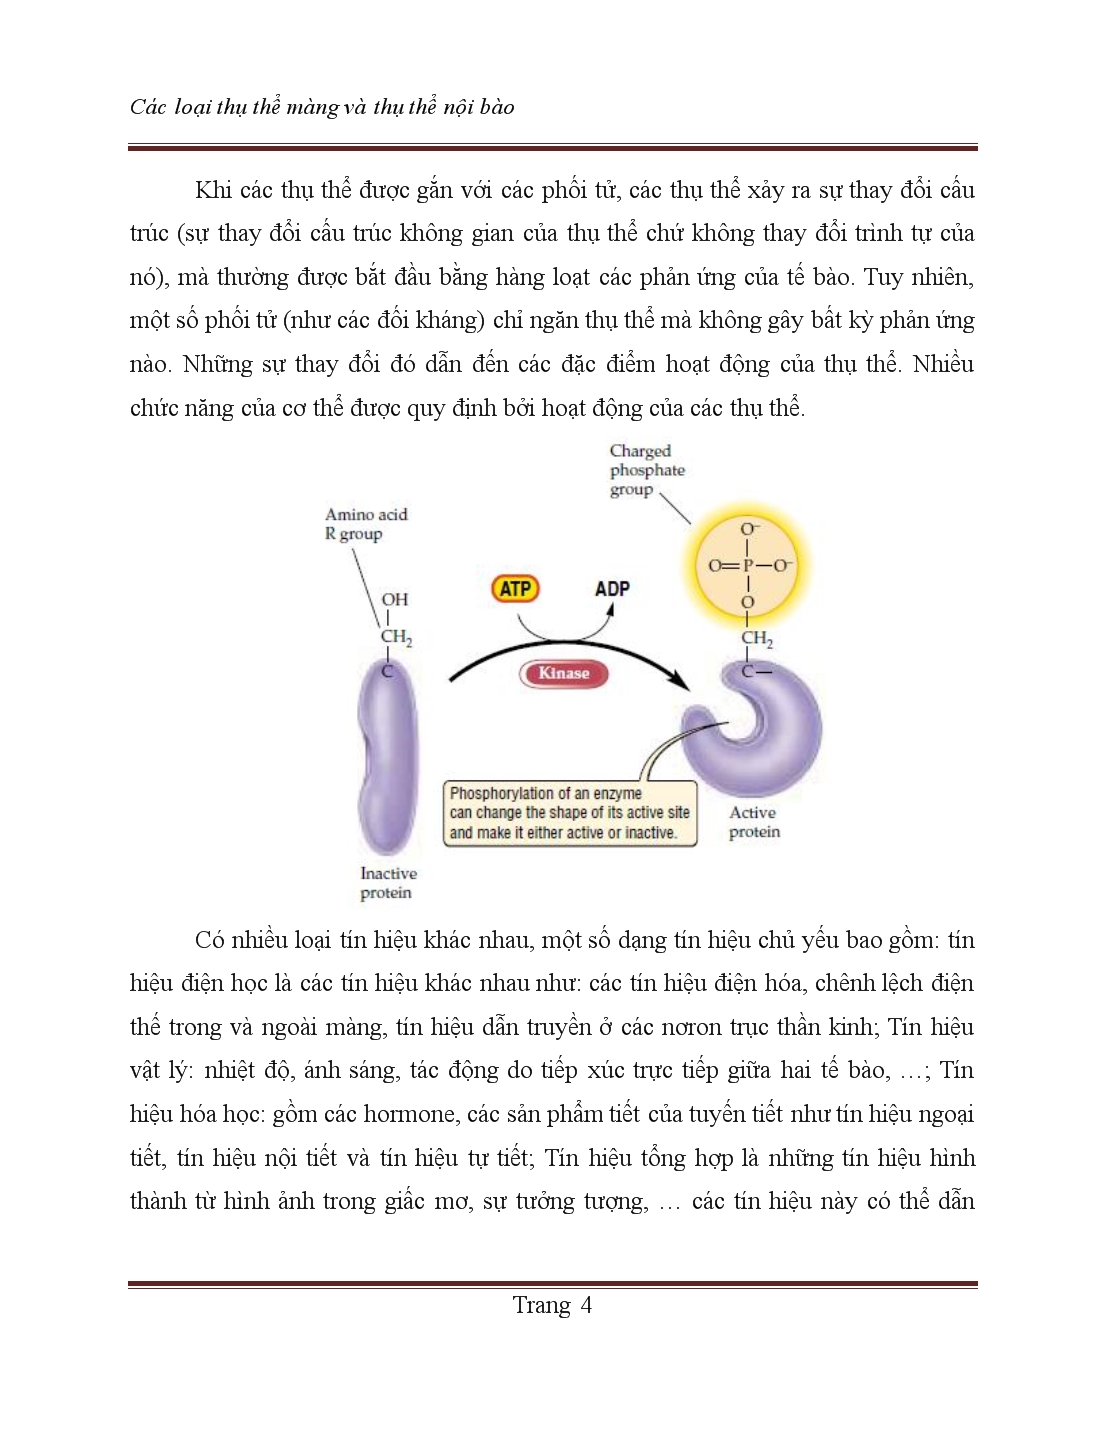 Tiểu luận Các loại thụ thể màng và thụ thể nội bào trang 4